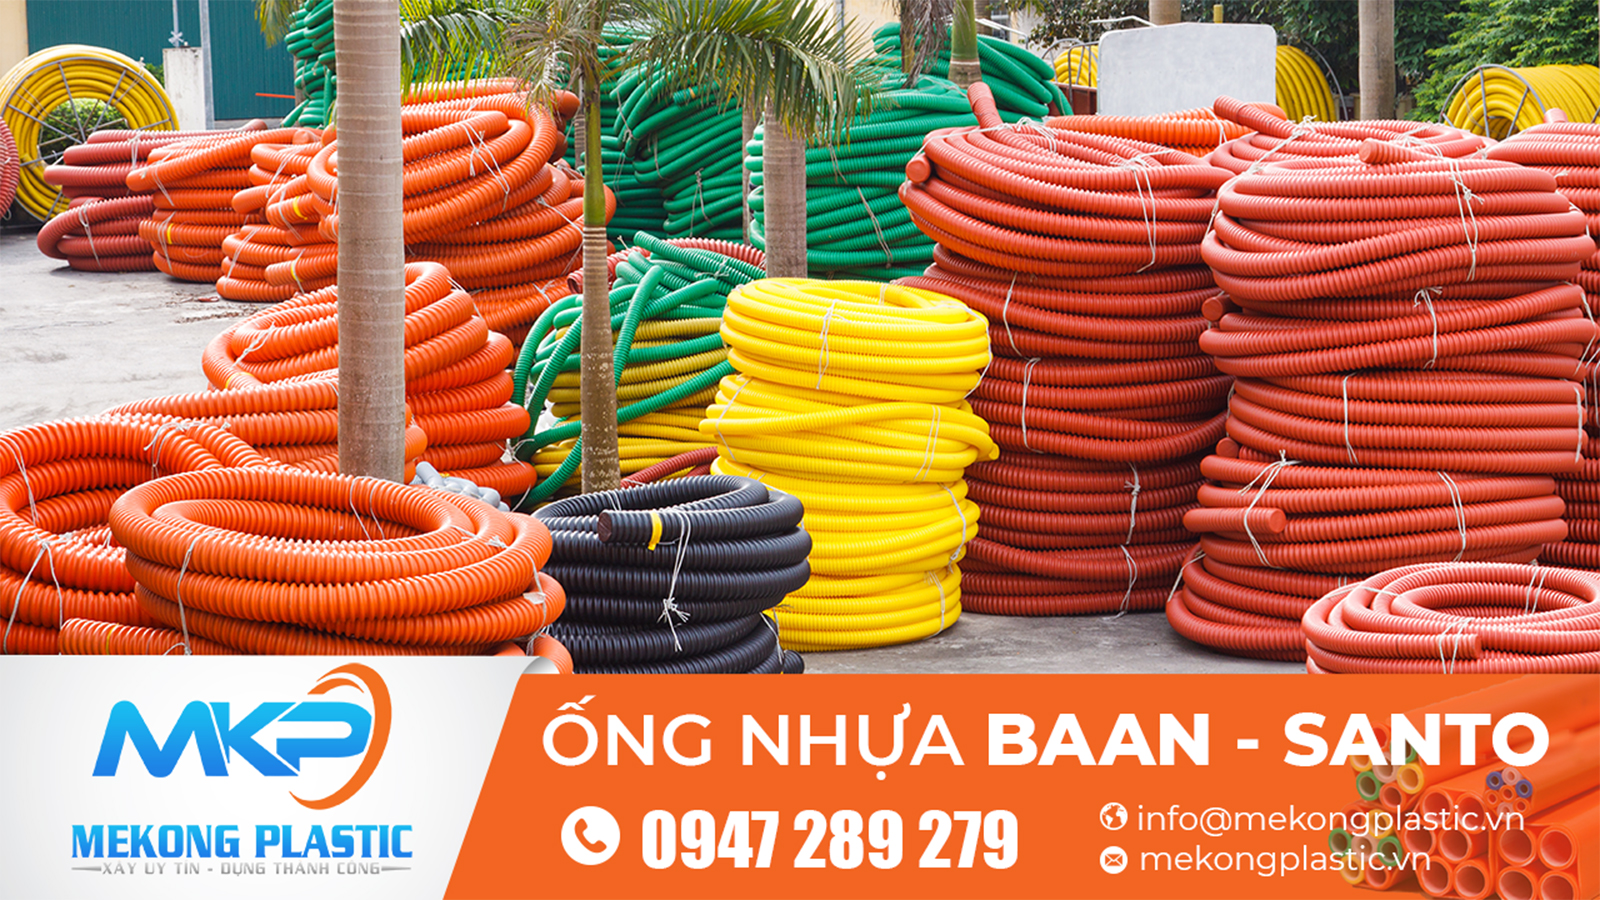 Mekong Plastic cung cấp số lượng lớn ống nhựa hdpe Santo- Baan